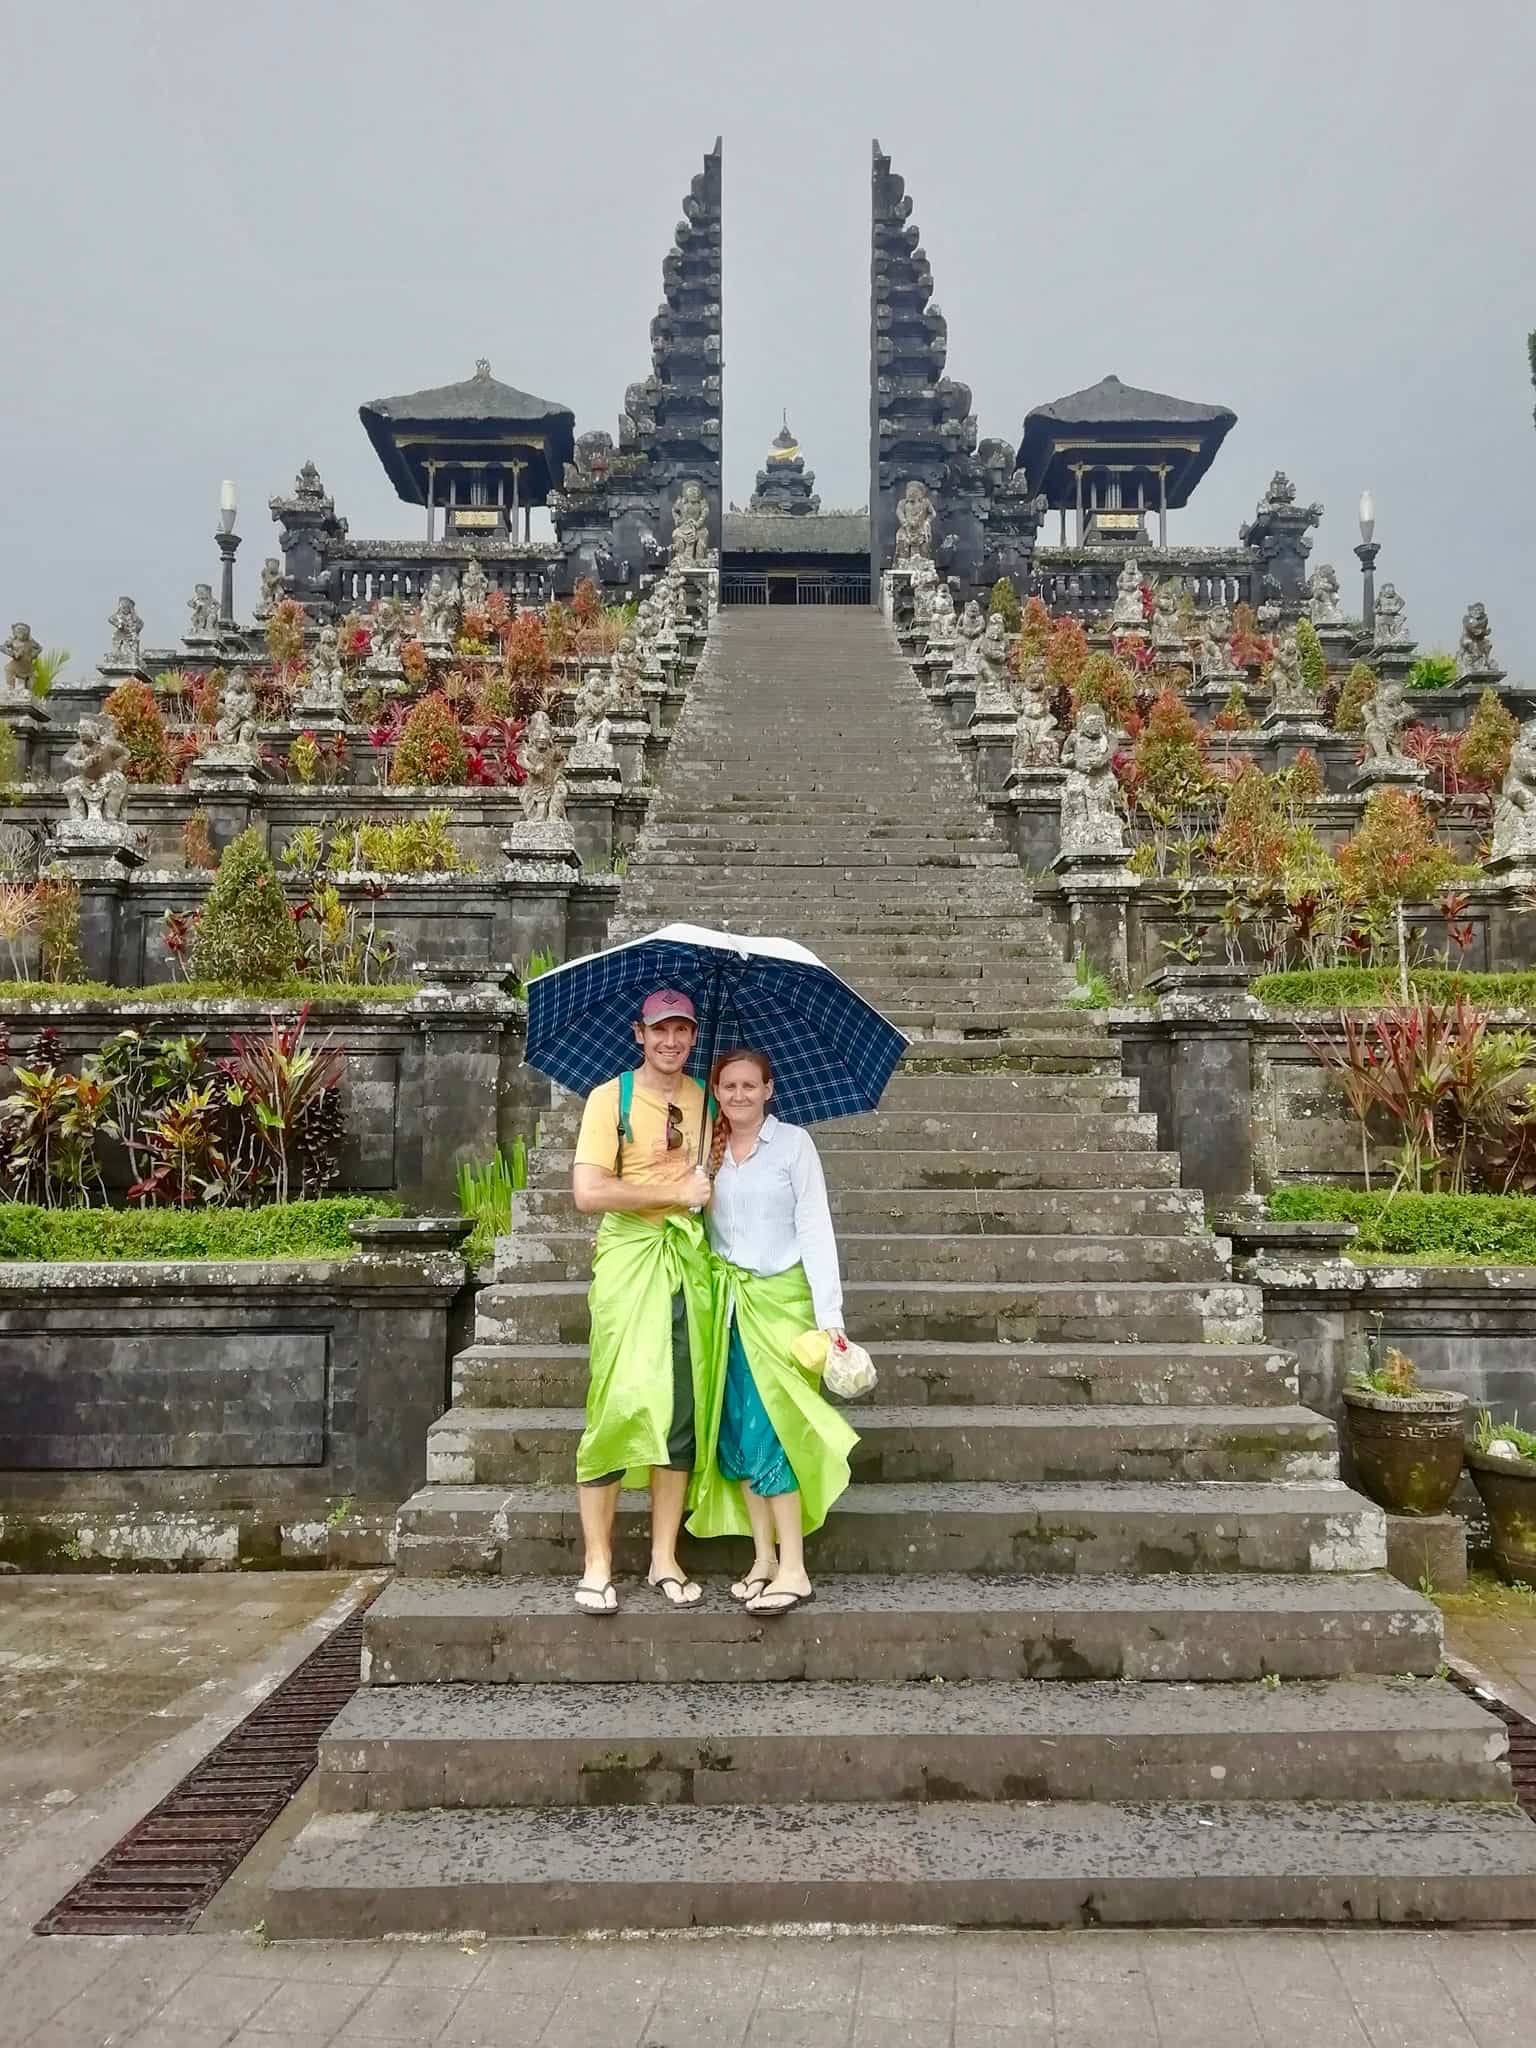 Us at Pura Besakih temple in Bali